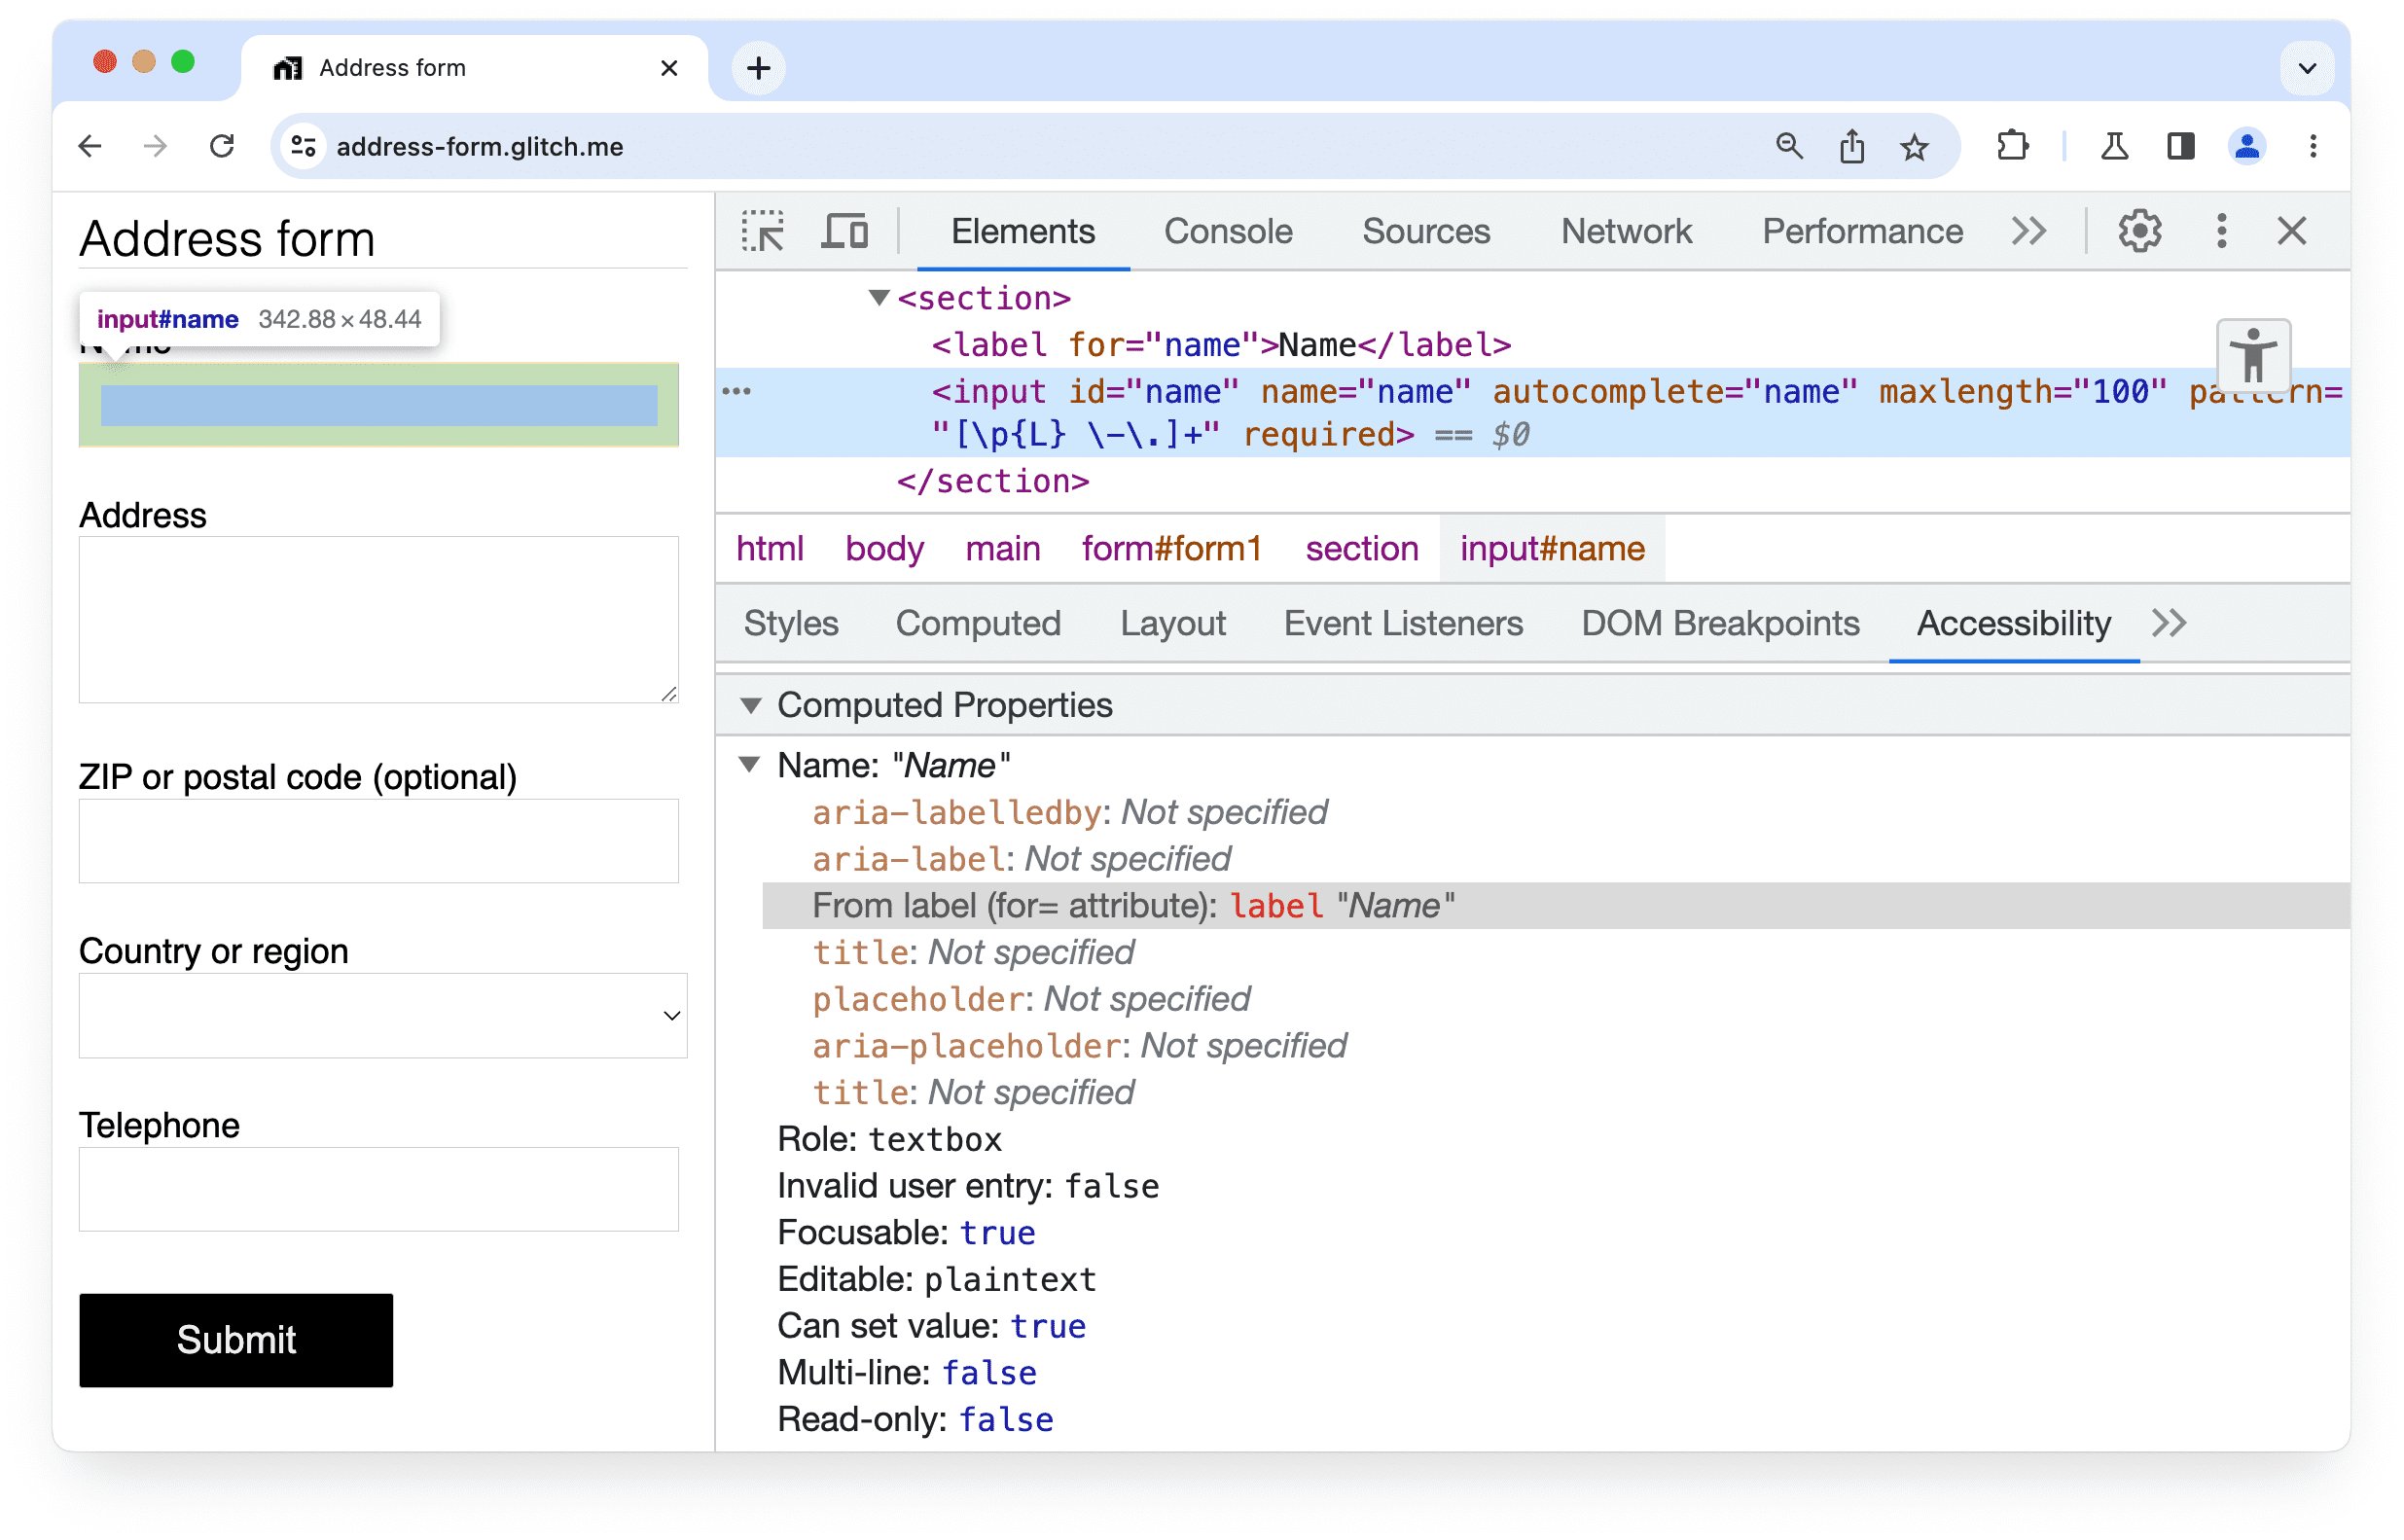 แผงการช่วยเหลือพิเศษใน Chrome DevTools
ที่แสดงให้เห็นว่าพบป้ายกำกับสำหรับองค์ประกอบอินพุตในแบบฟอร์ม